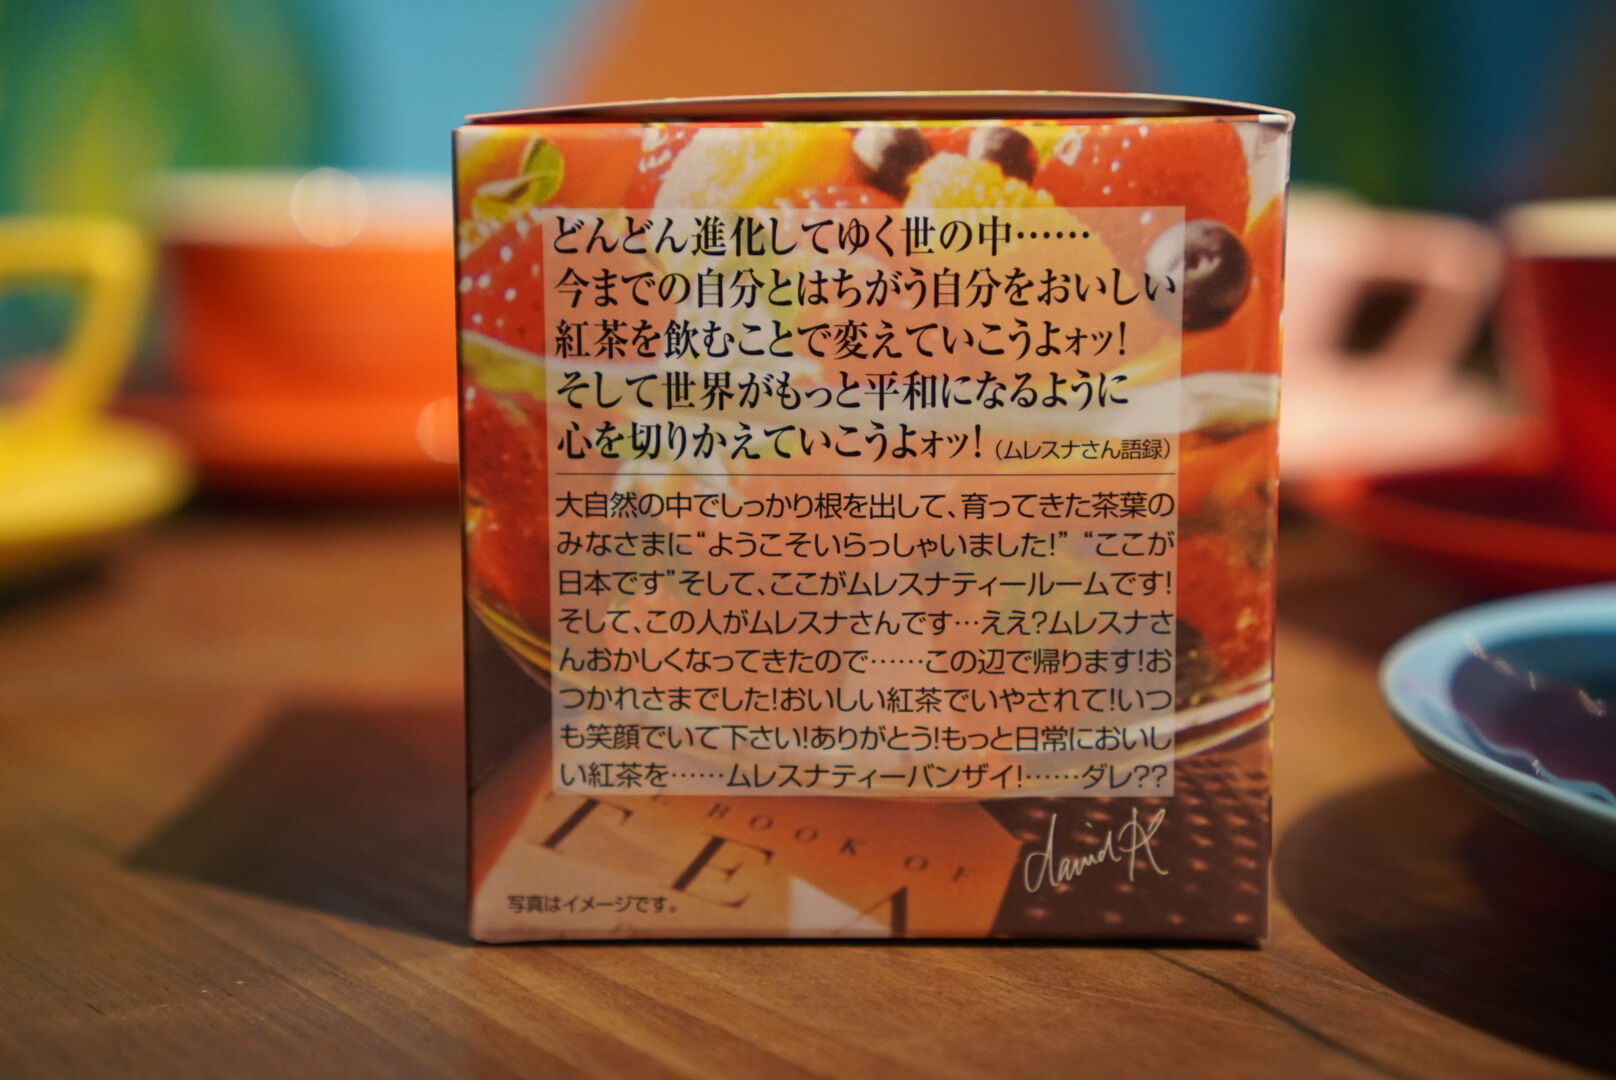 紅茶 ムレスナティー 4トロピカルフルーツ 果実が大好き!きみとぼくだから･･･